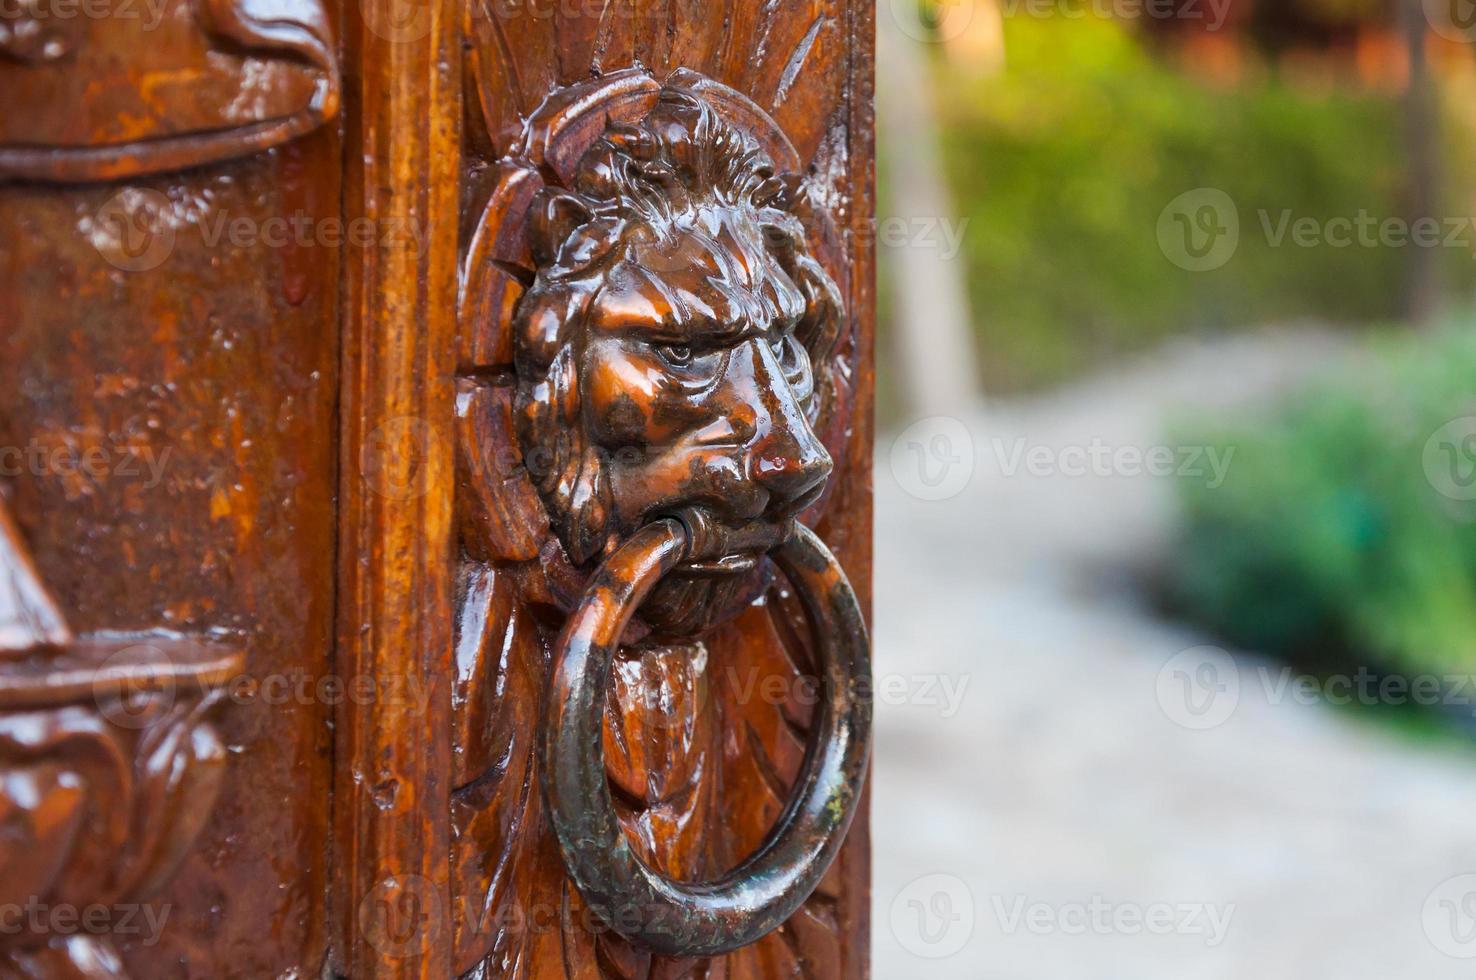 traditionell Tür Klopfer auf ein schnitzen hölzern Tür, Eisen gemacht, zeigen das Gesicht von ein Löwe foto